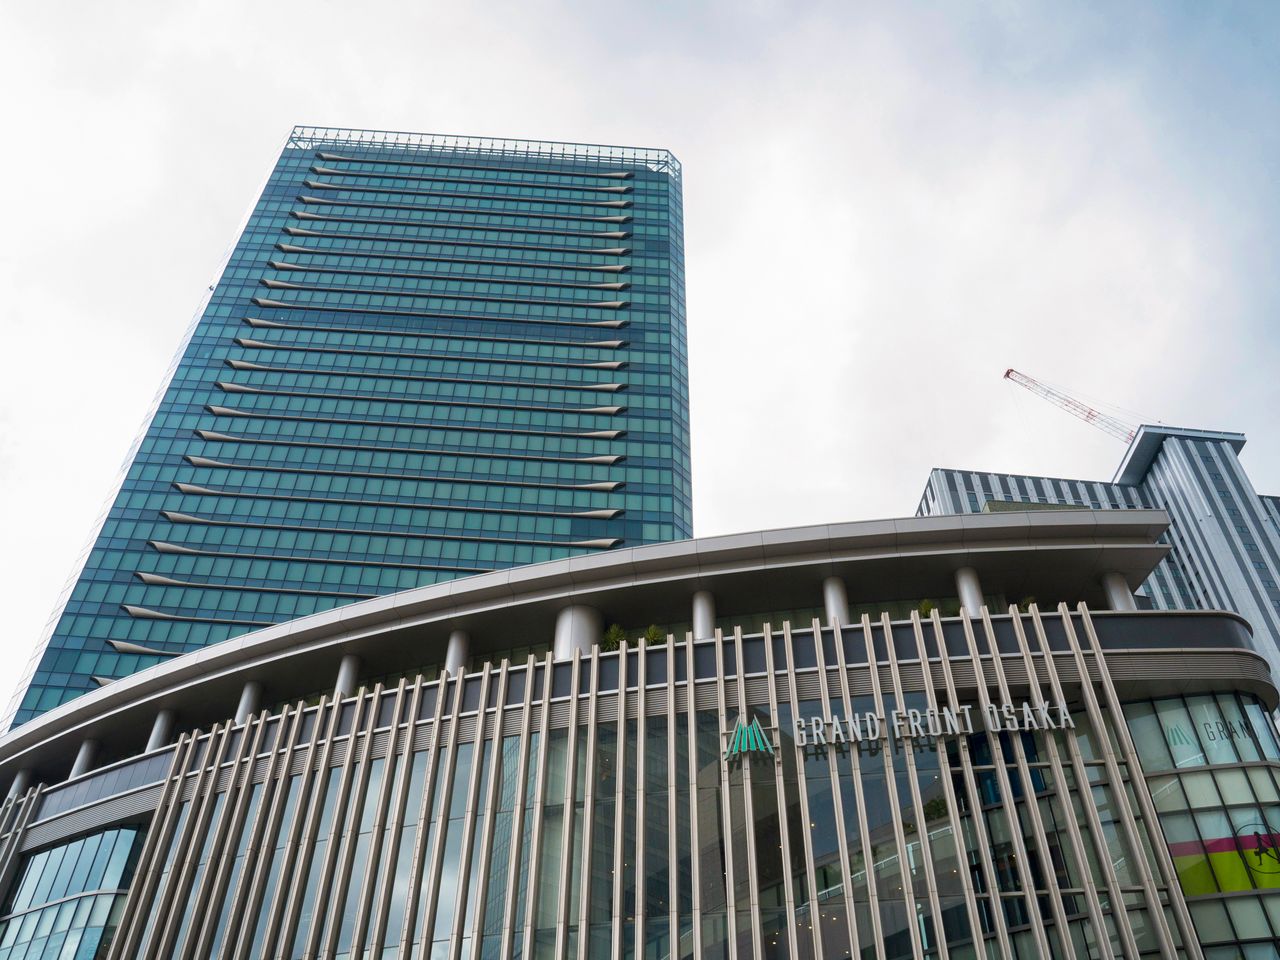 キタの再開発「うめきた1期地区」を代表する複合商業施設「グランフロント大阪」。現在は2期の開発が進行中